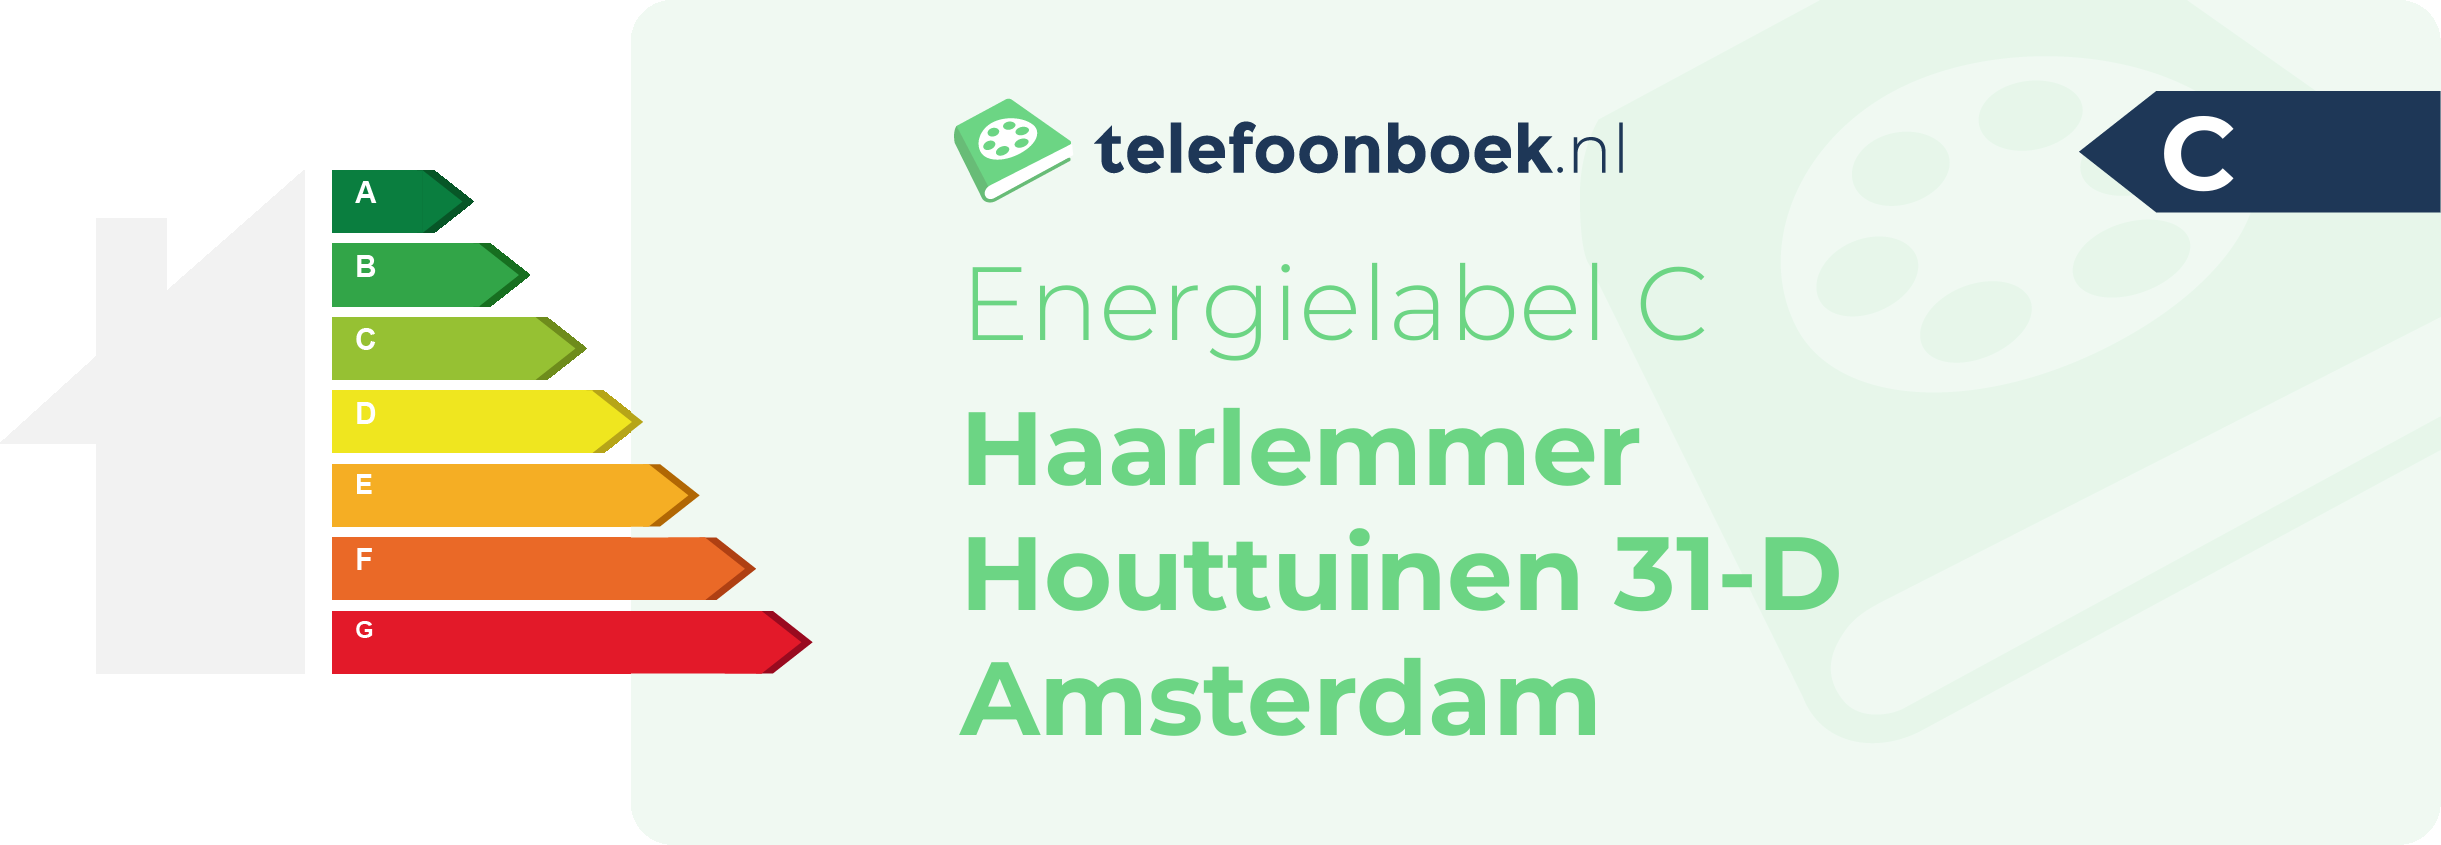 Energielabel Haarlemmer Houttuinen 31-D Amsterdam